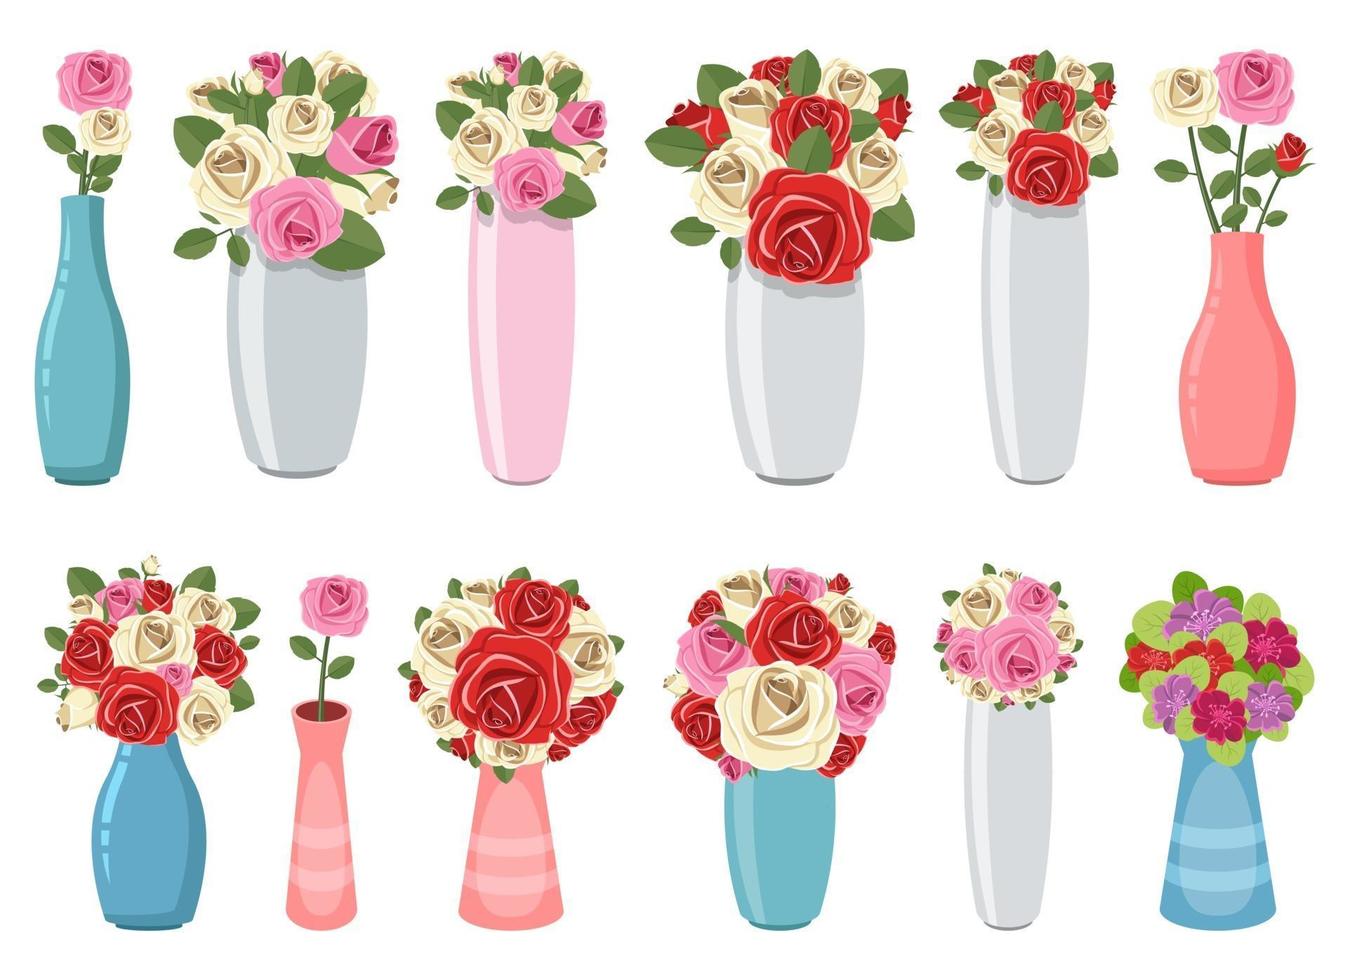 vaas met bloem vector ontwerp illustratie geïsoleerd op een witte achtergrond